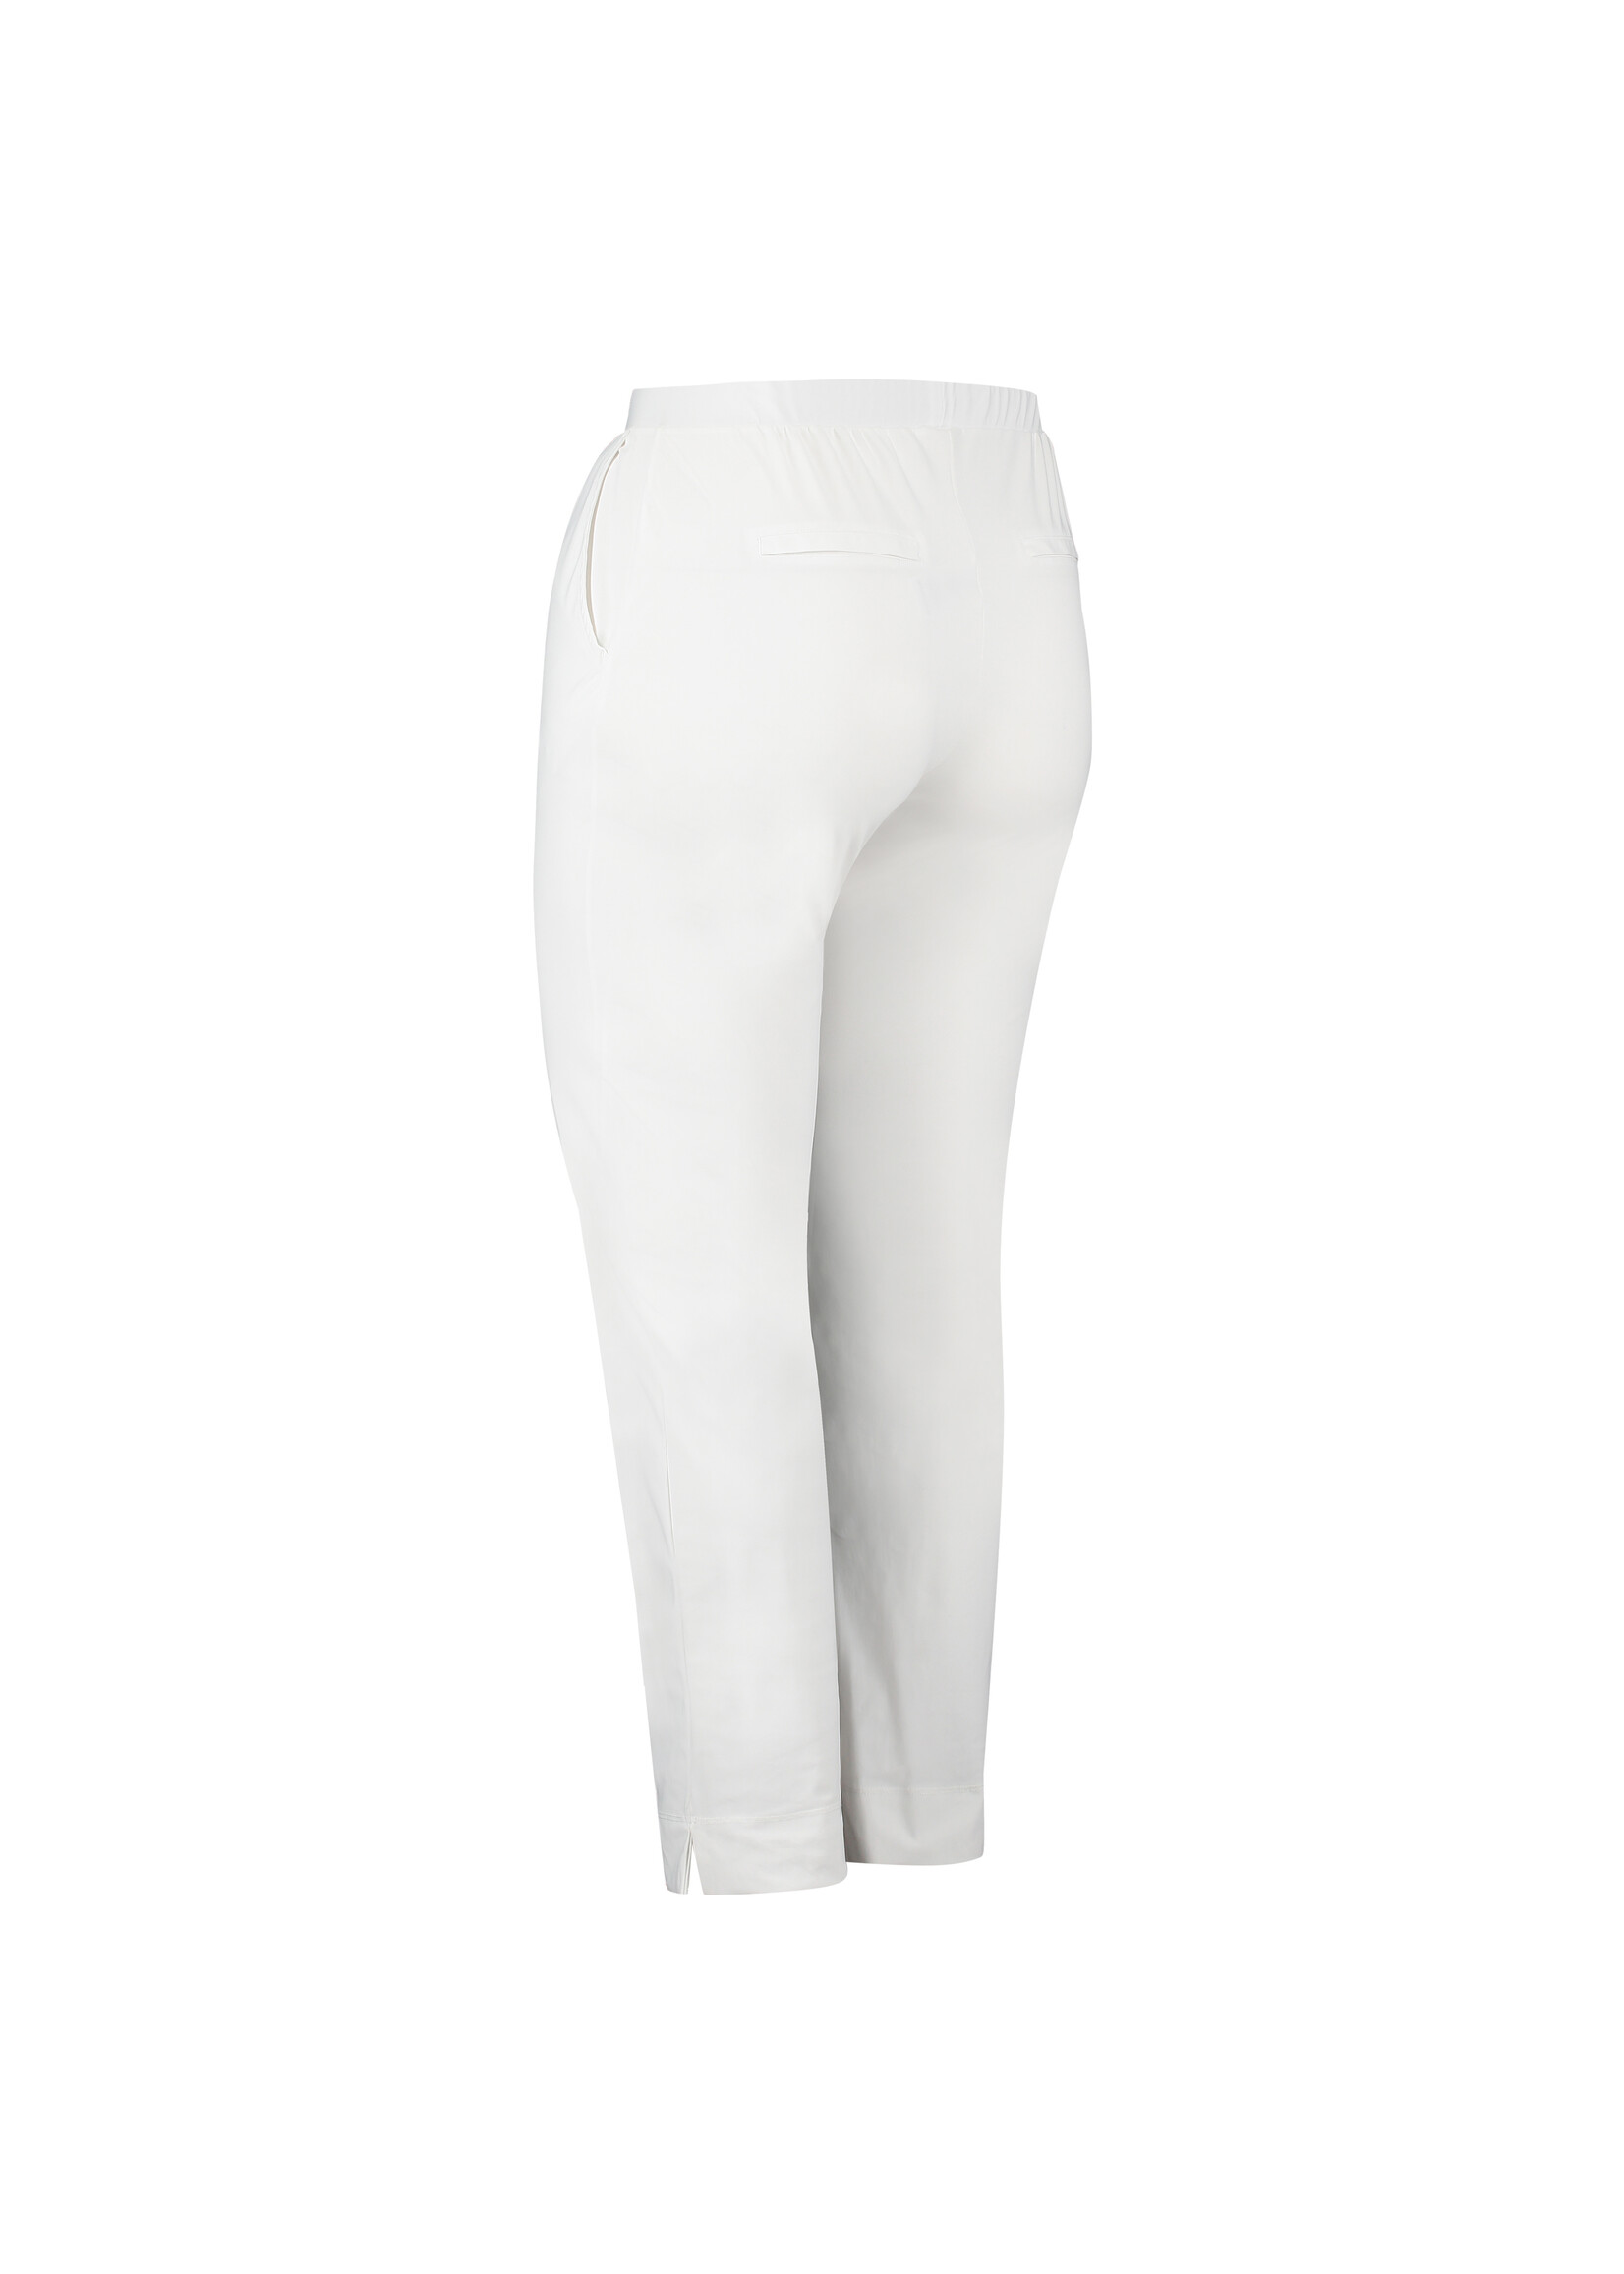 Pants 7/8 White - Boetiek Kijan - Shop hier je leukste kleding voor dames  vanaf maat 40 | Leggings